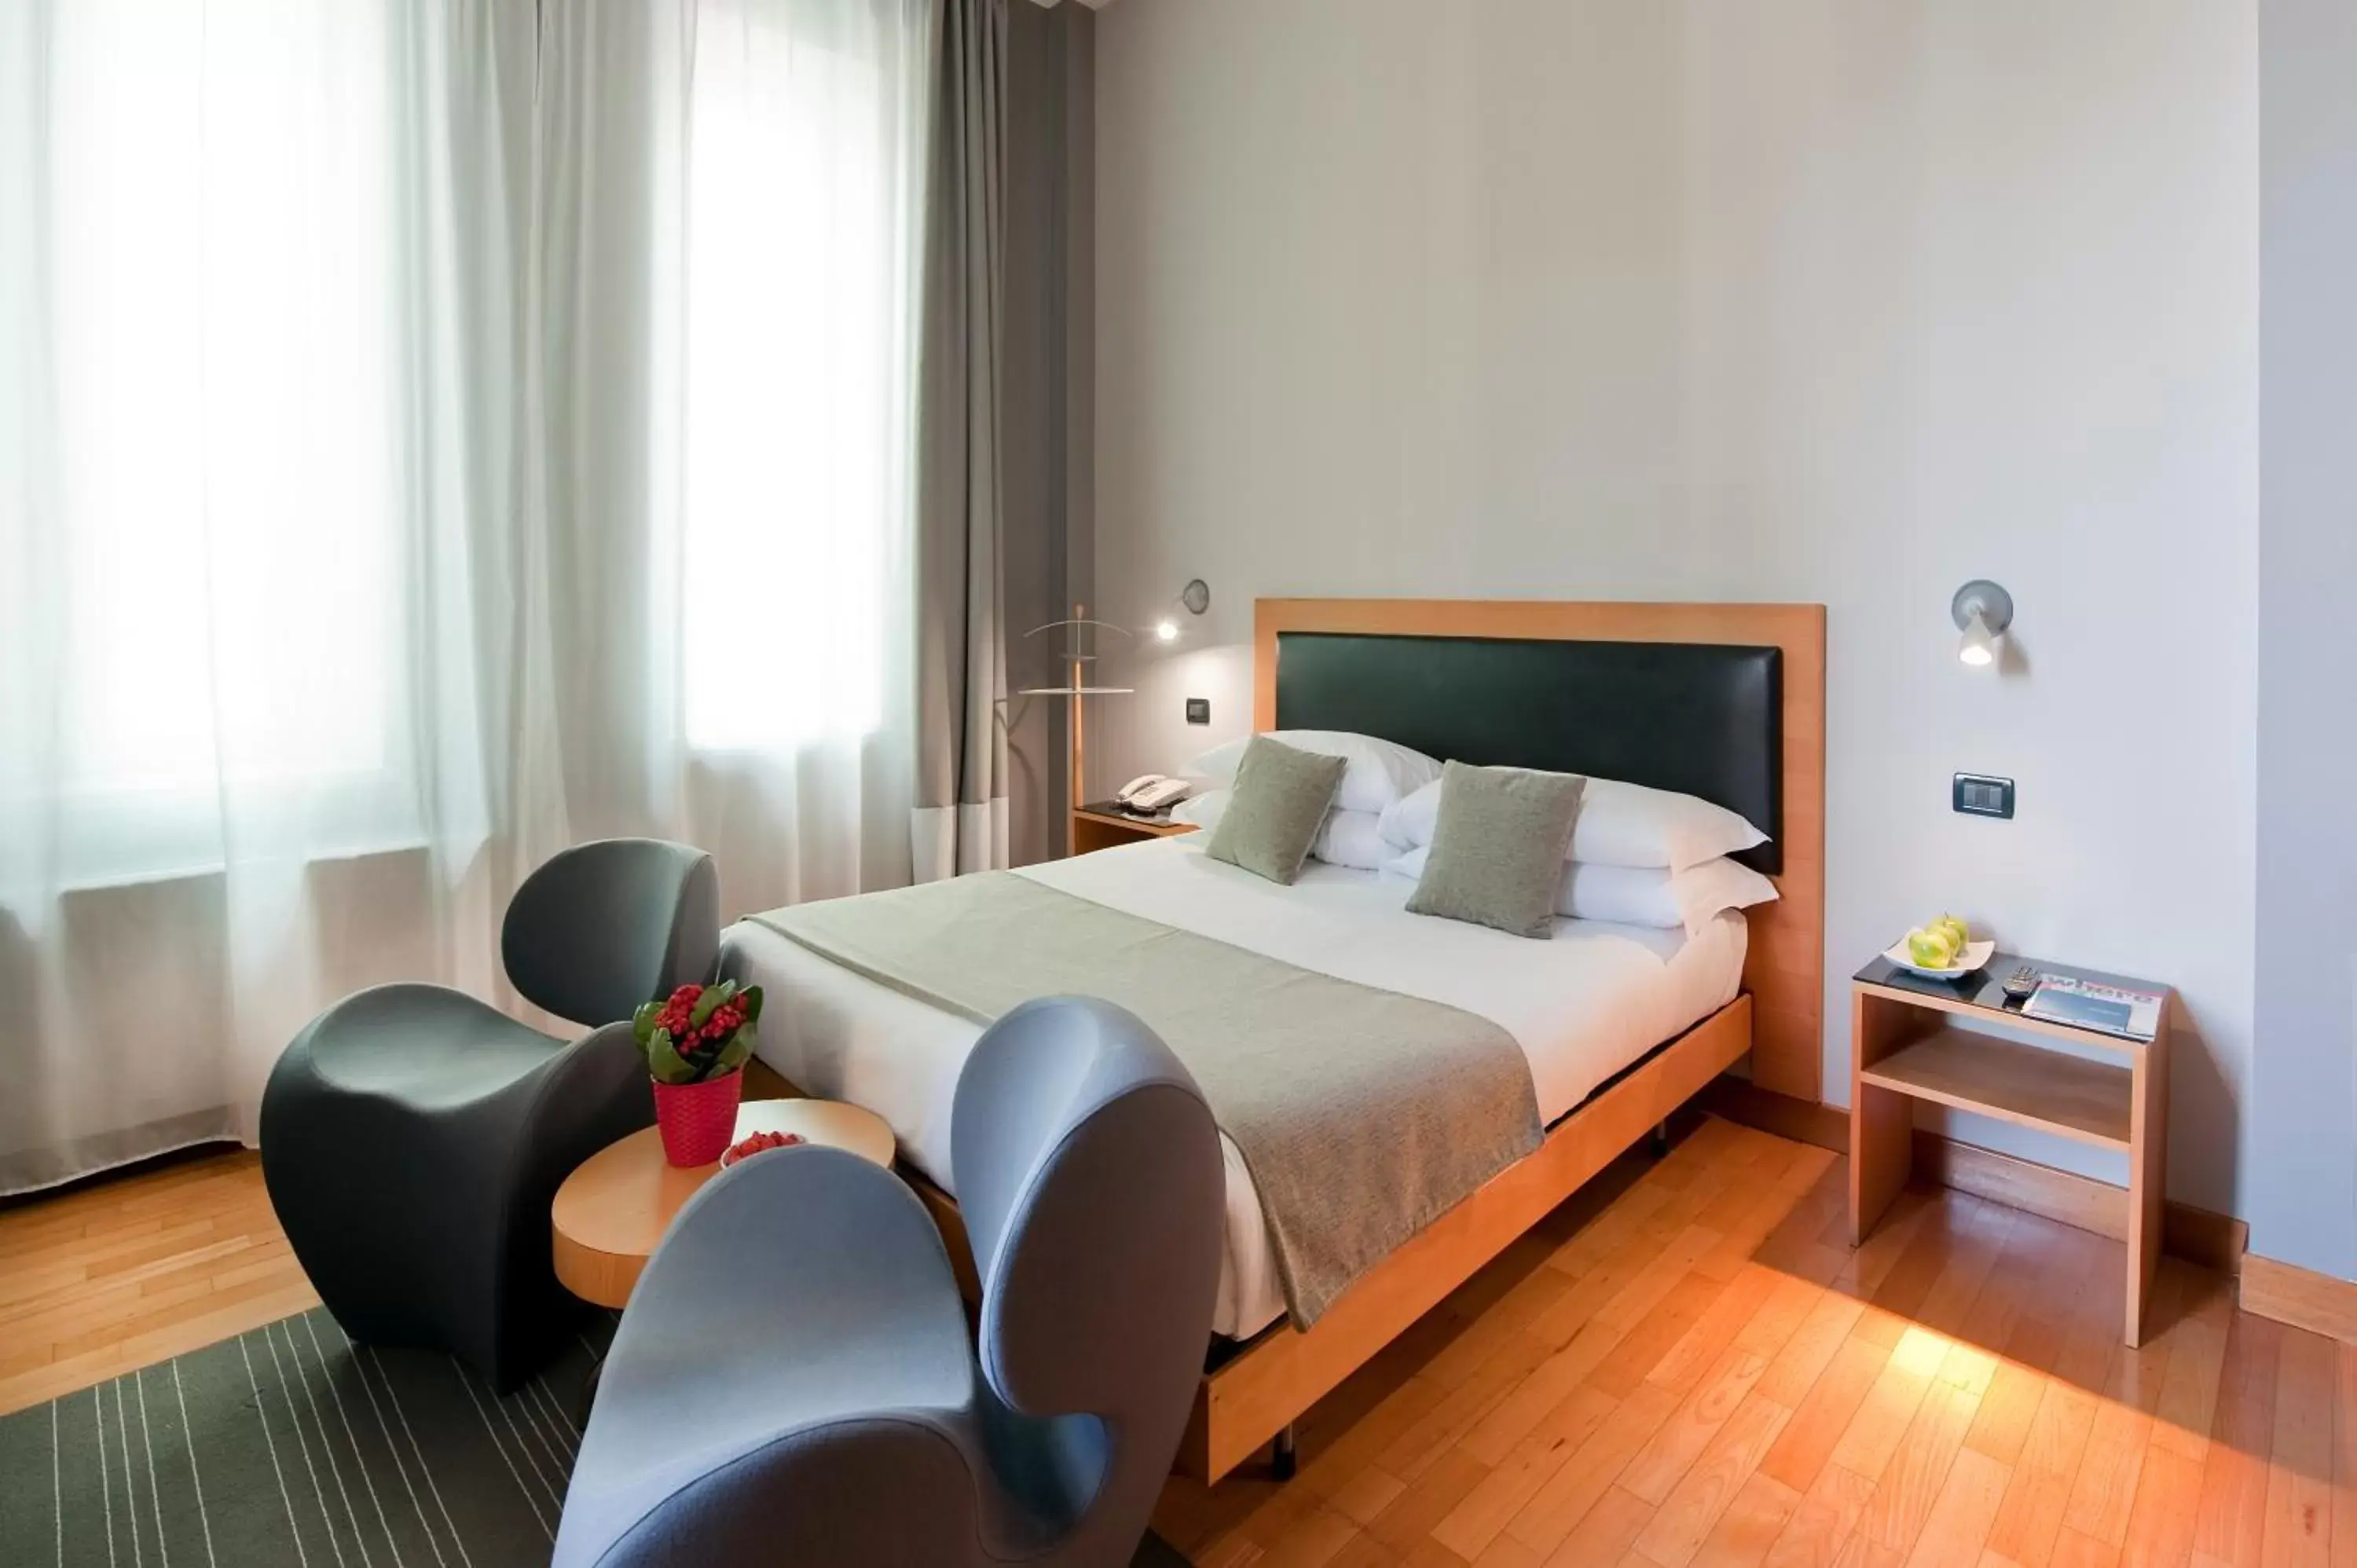 Bedroom, Room Photo in Best Western Ars Hotel